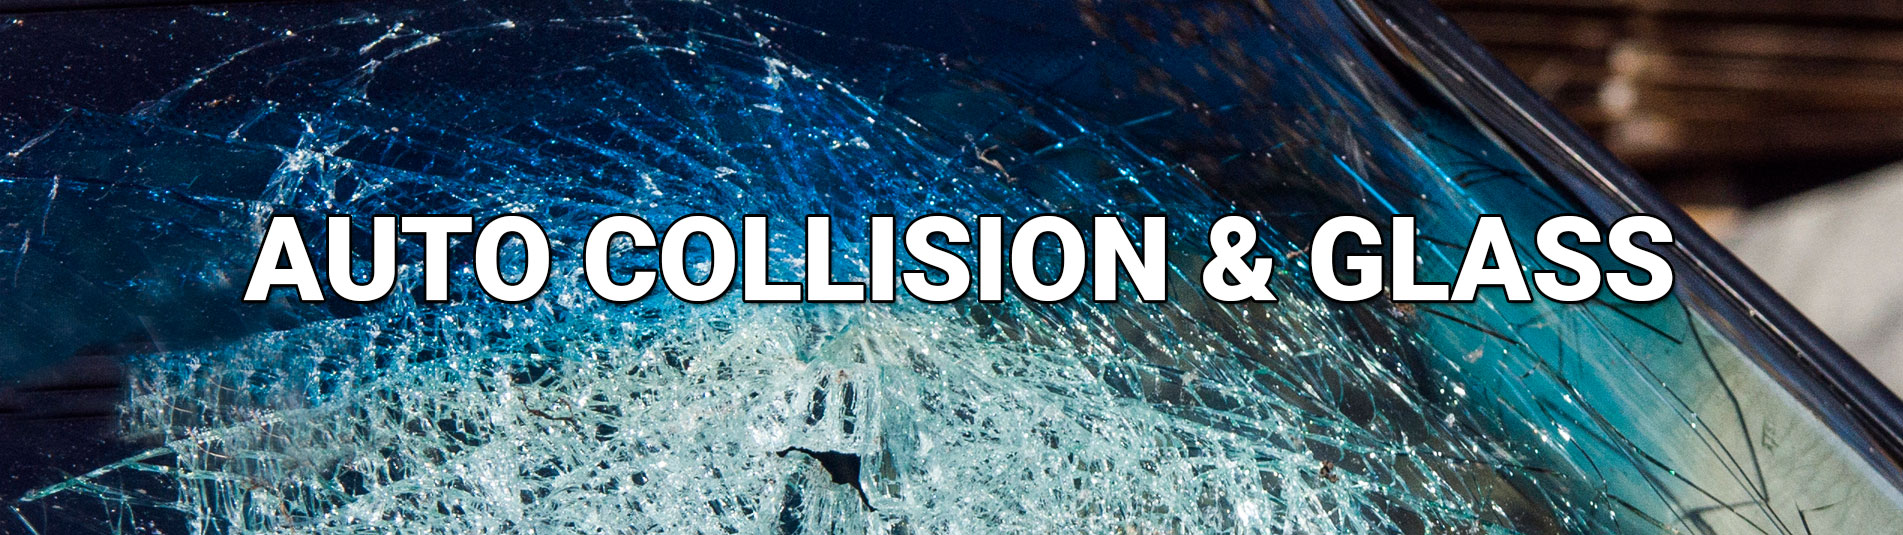 Auto collision & Glass